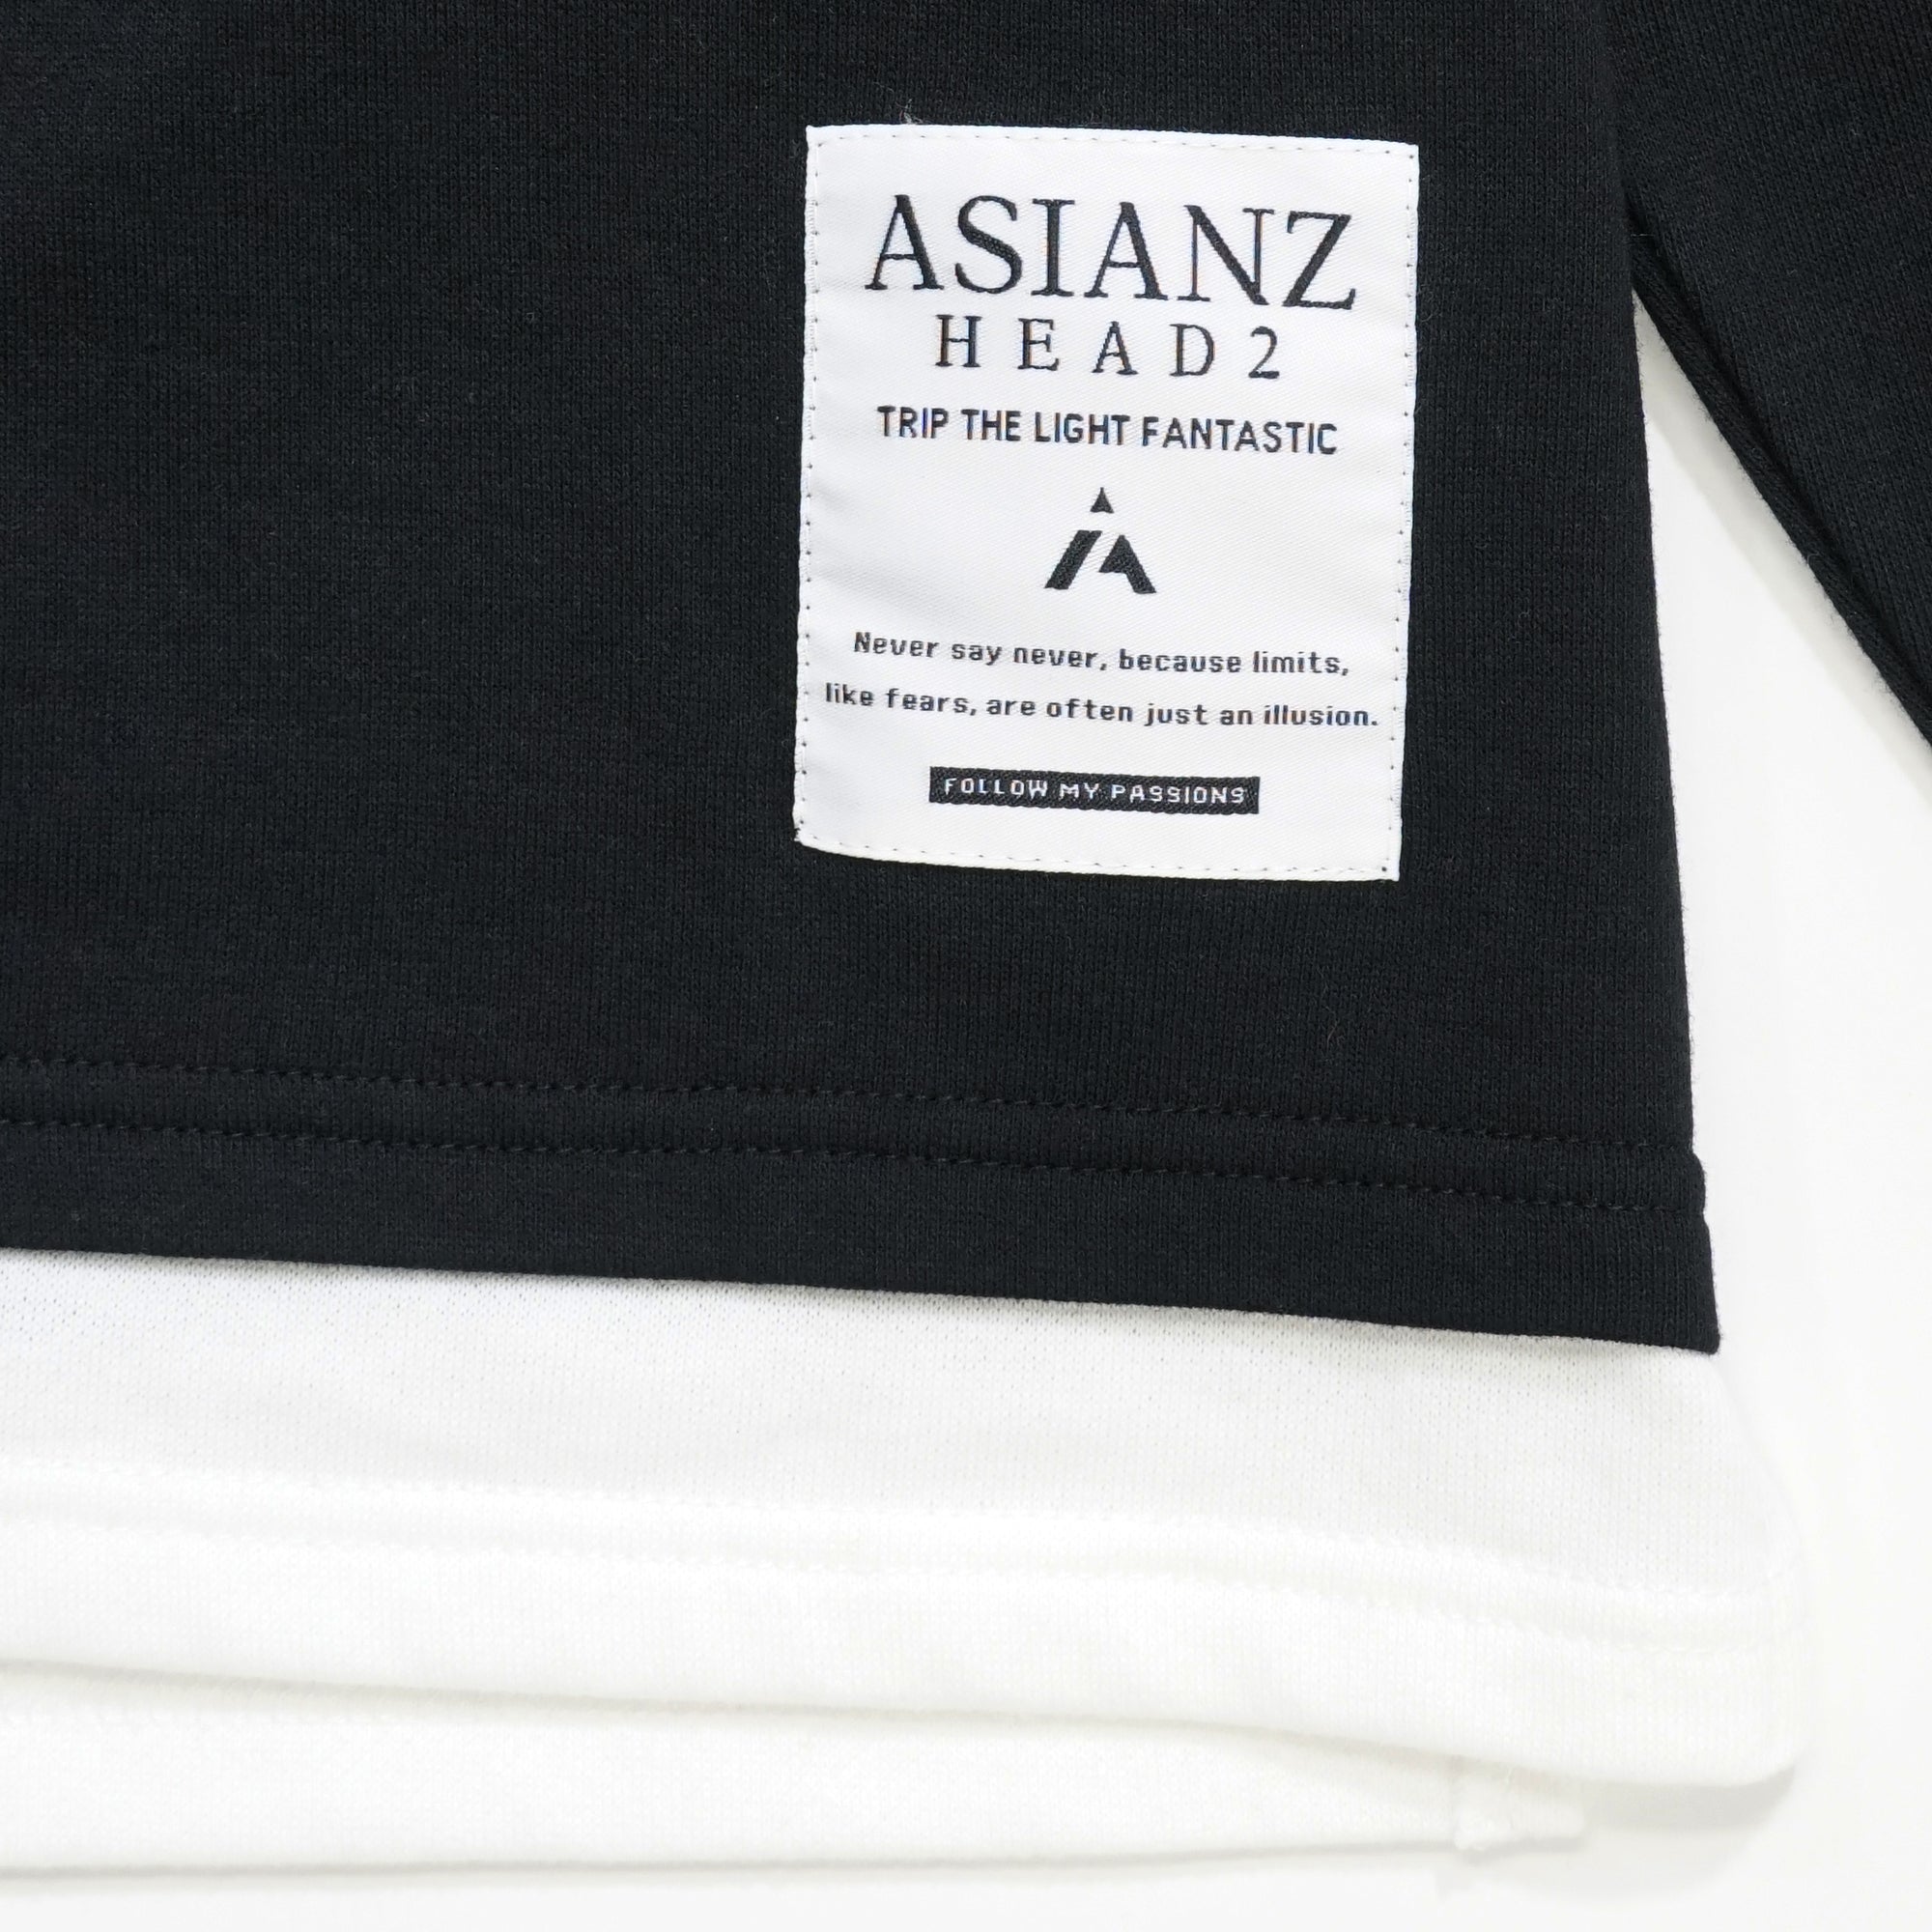 (40%オフ! セール商品)ASIANZ HEAD2 ジェルロゴ裾レイヤードパーカー キッズウェアー